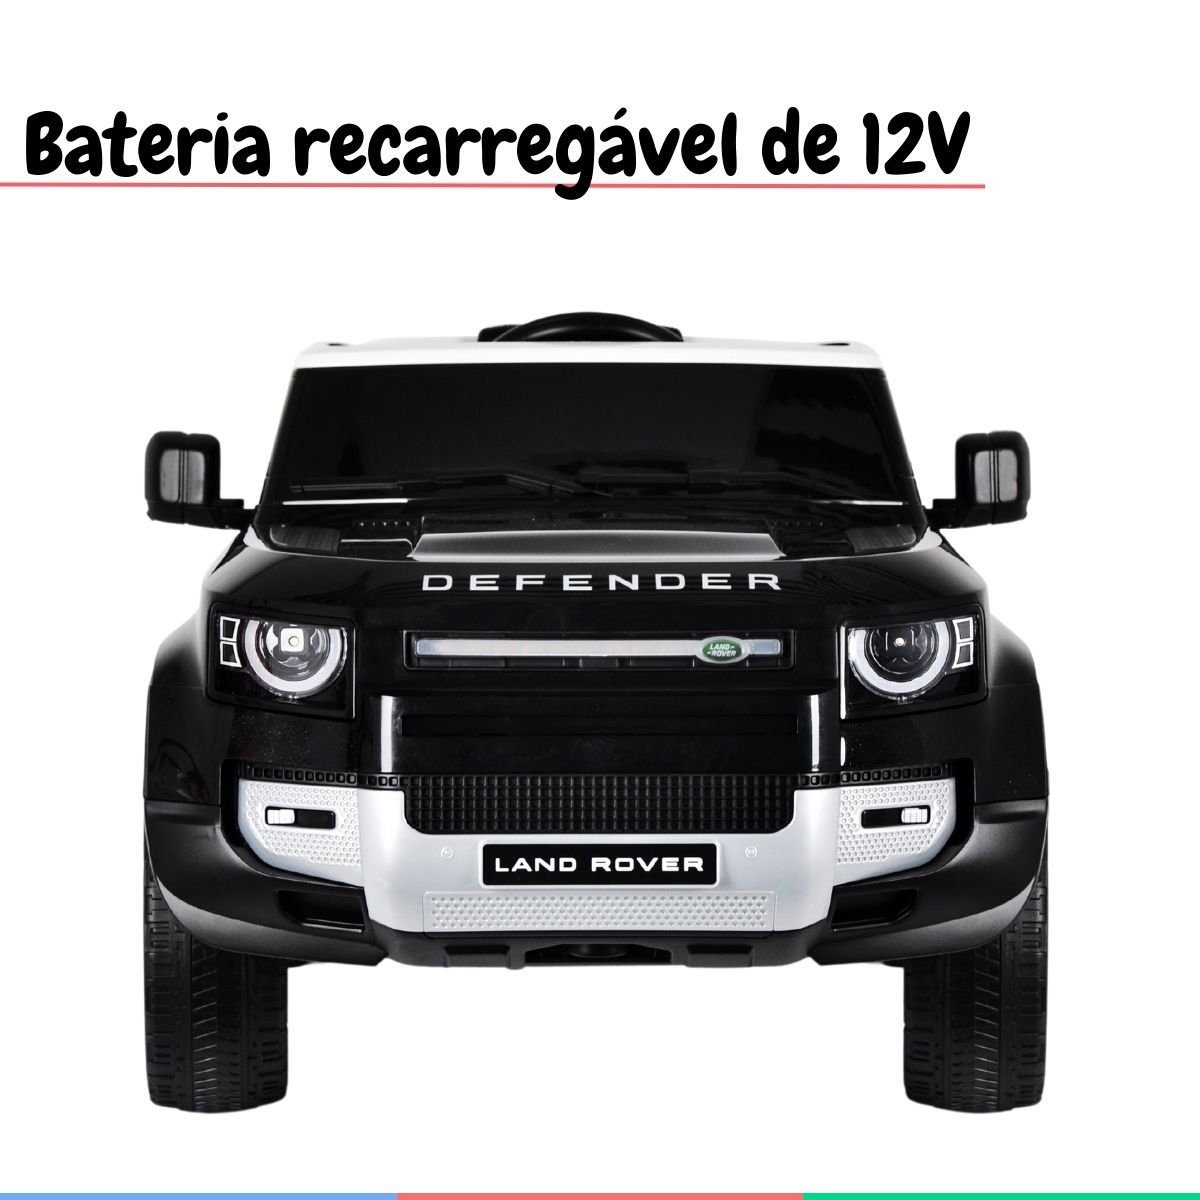 Carro Elétrico Infantil Controle Criança até 30kg Bluetooth Usb Mp3 5km/h Land Rover Defender Preto - 2